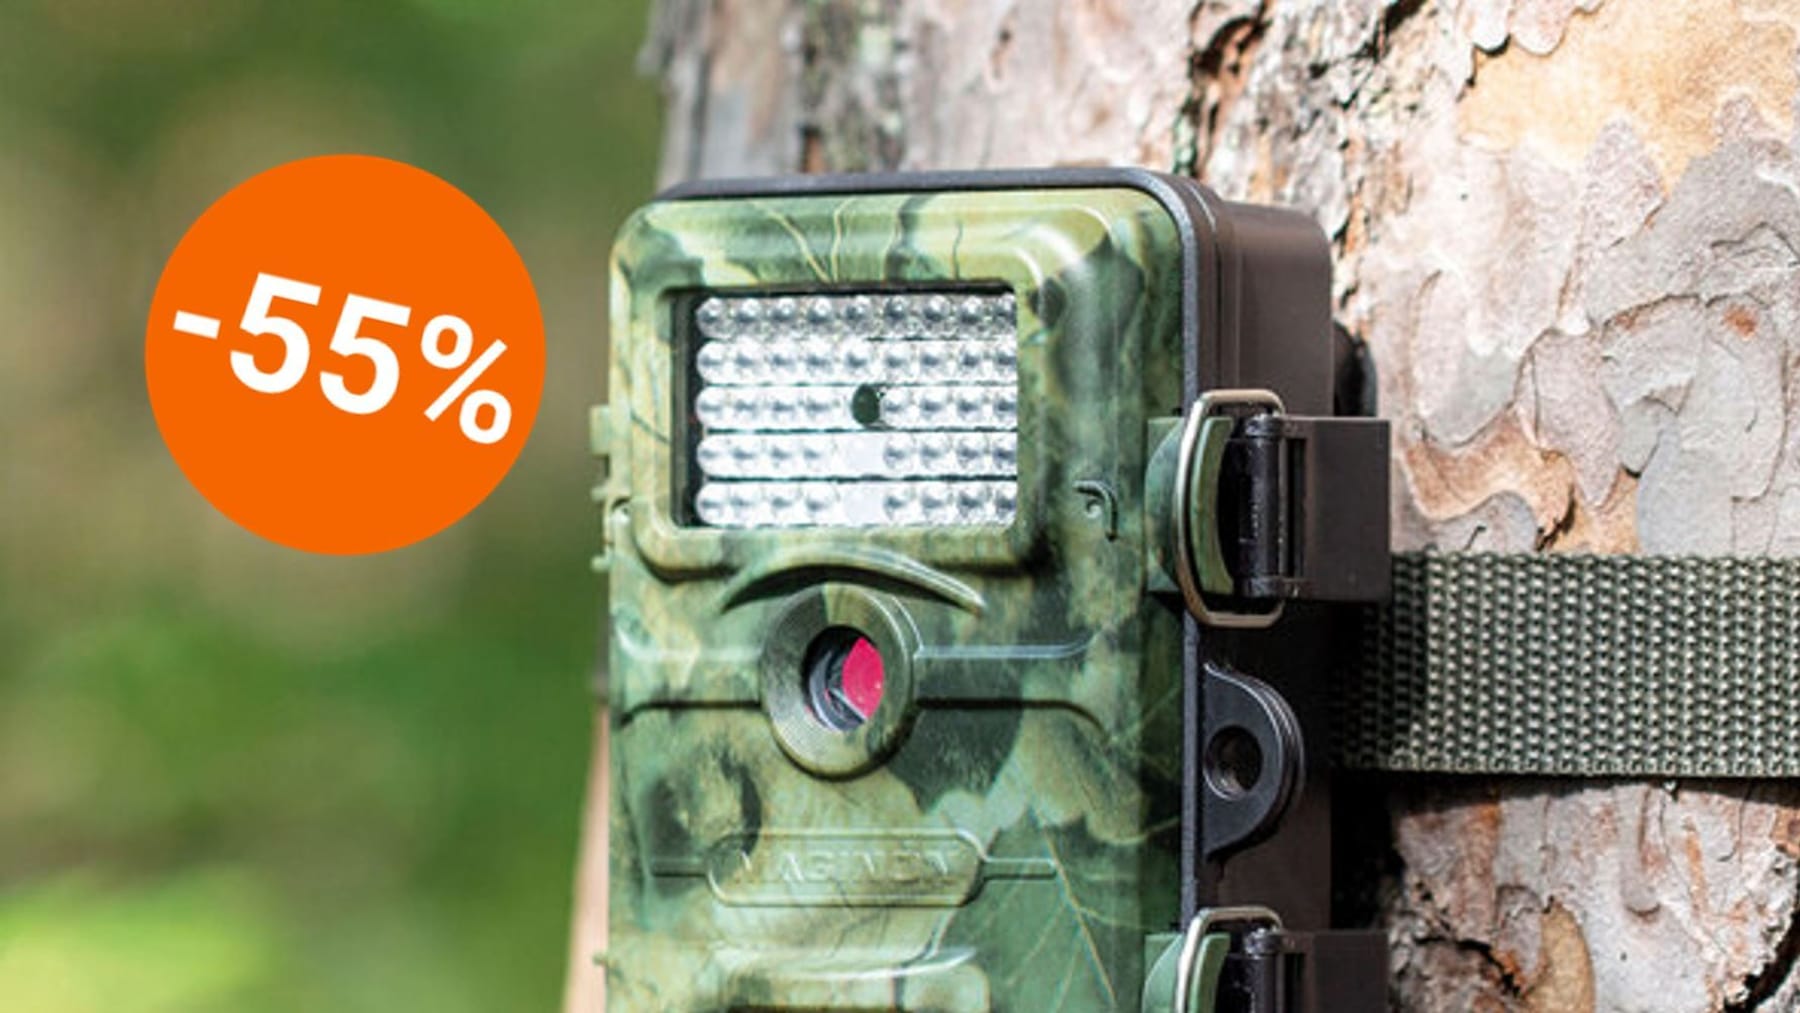 Kamera przyrodnicza z noktowizorem jest dostępna za pół ceny w Aldi